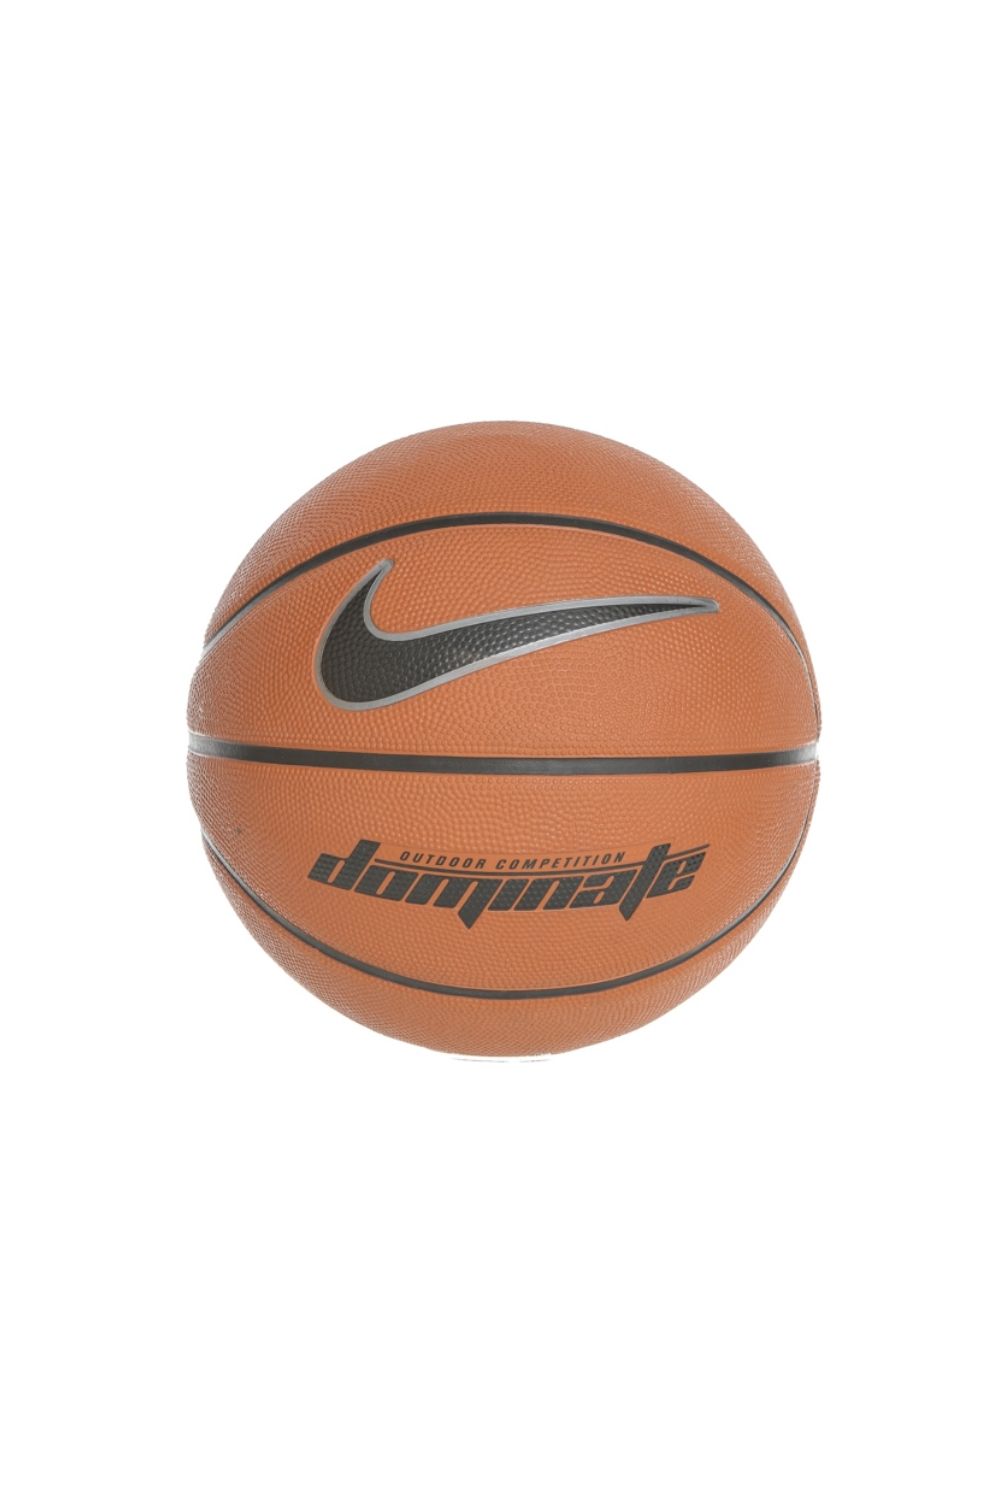 Ανδρικά/Αξεσουάρ/Αθλητικά Είδη/Μπάλες NIKE - Μπάλα basketball NIKE DOMINATE 8P πορτοκαλί